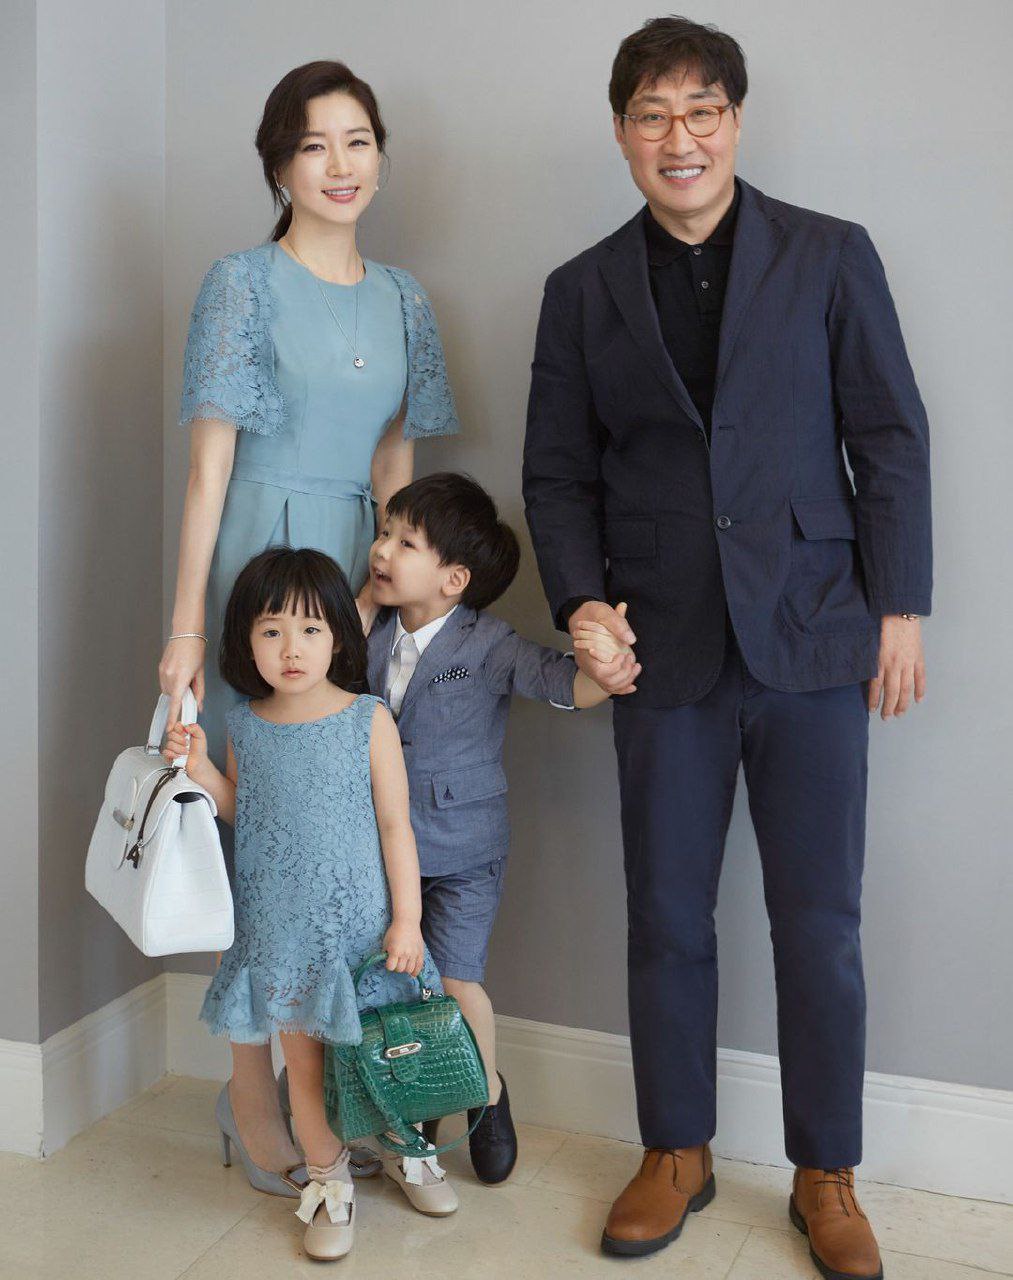 بازیگر ۵۳ ساله نقش یانگوم با دوتا بچه قد و نیم قدش/از دختر ۱۸ ساله جوون تره!